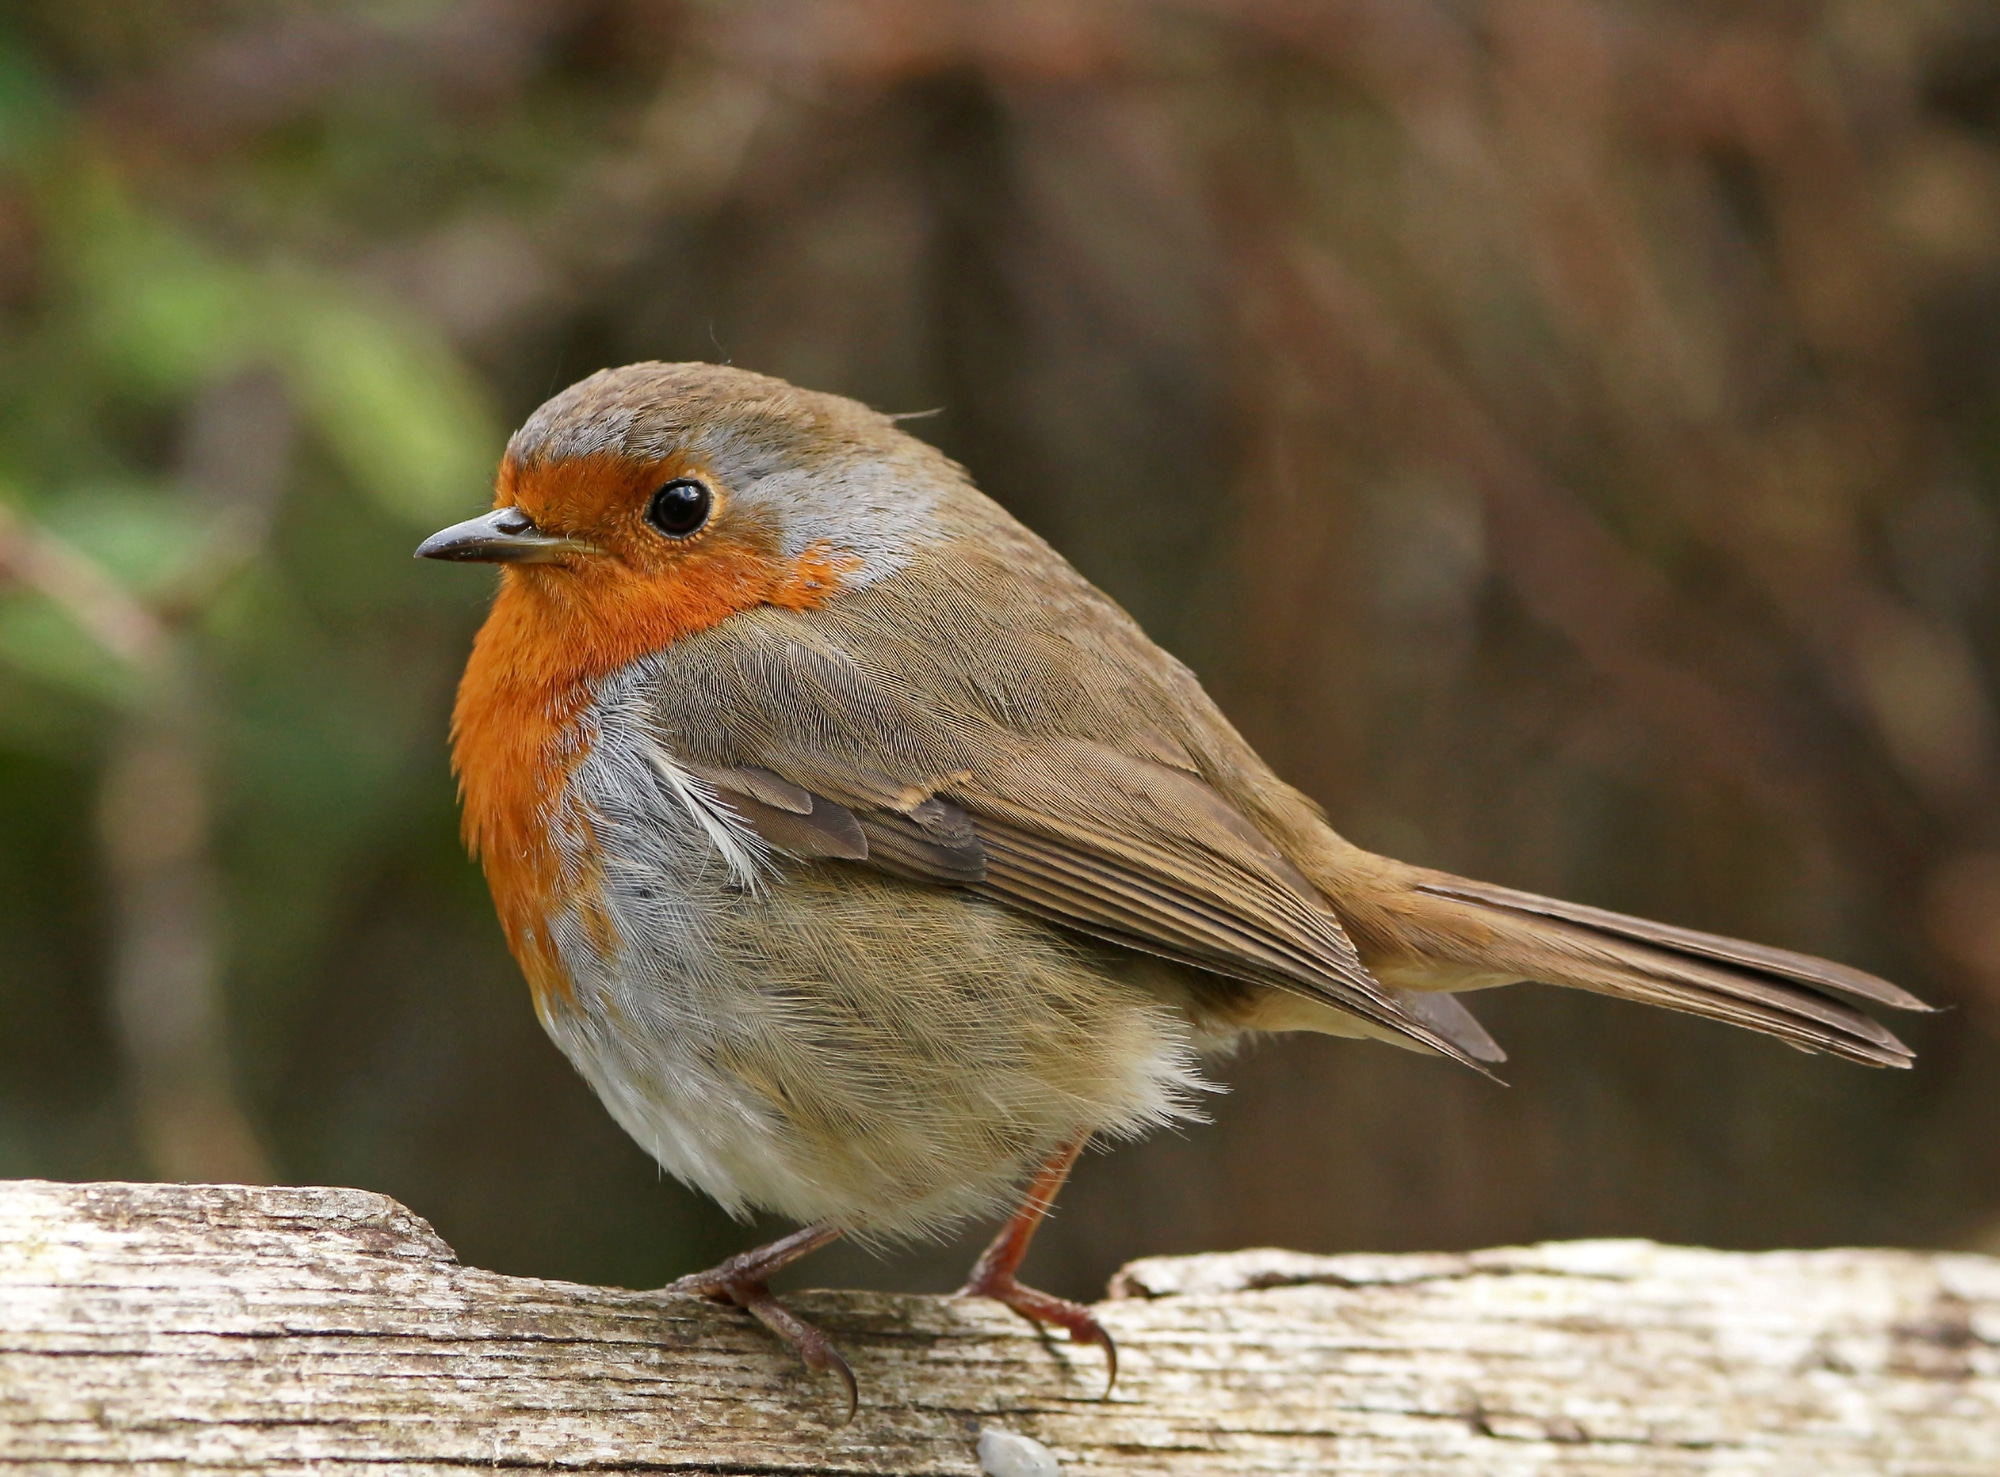 A female robin